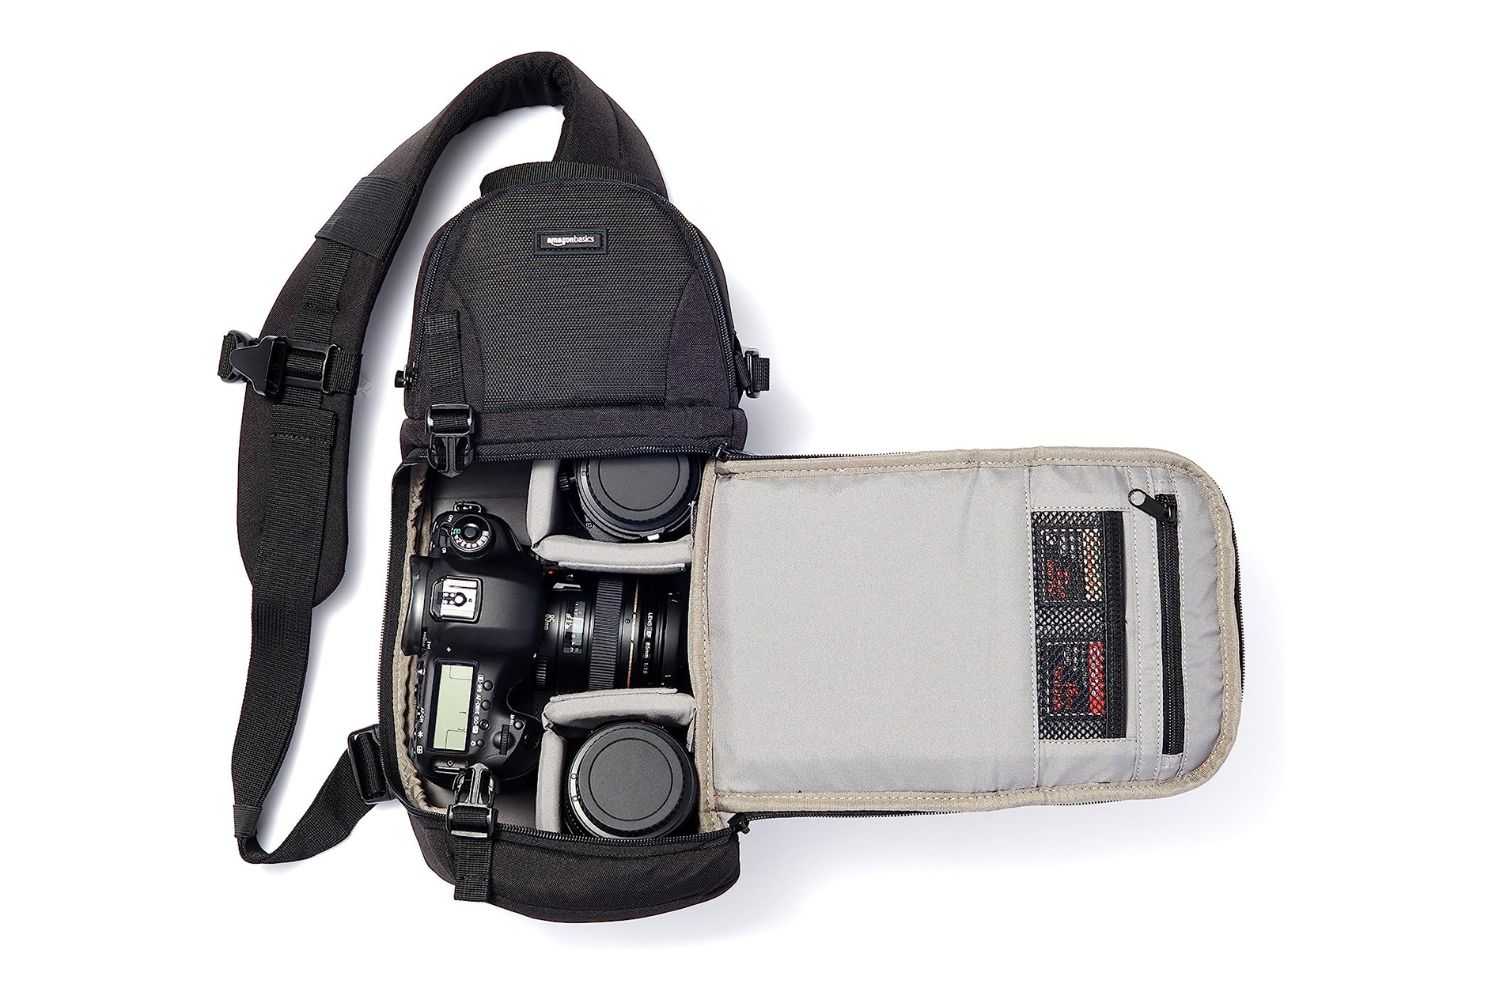 Amazon Basics Camera sling bag